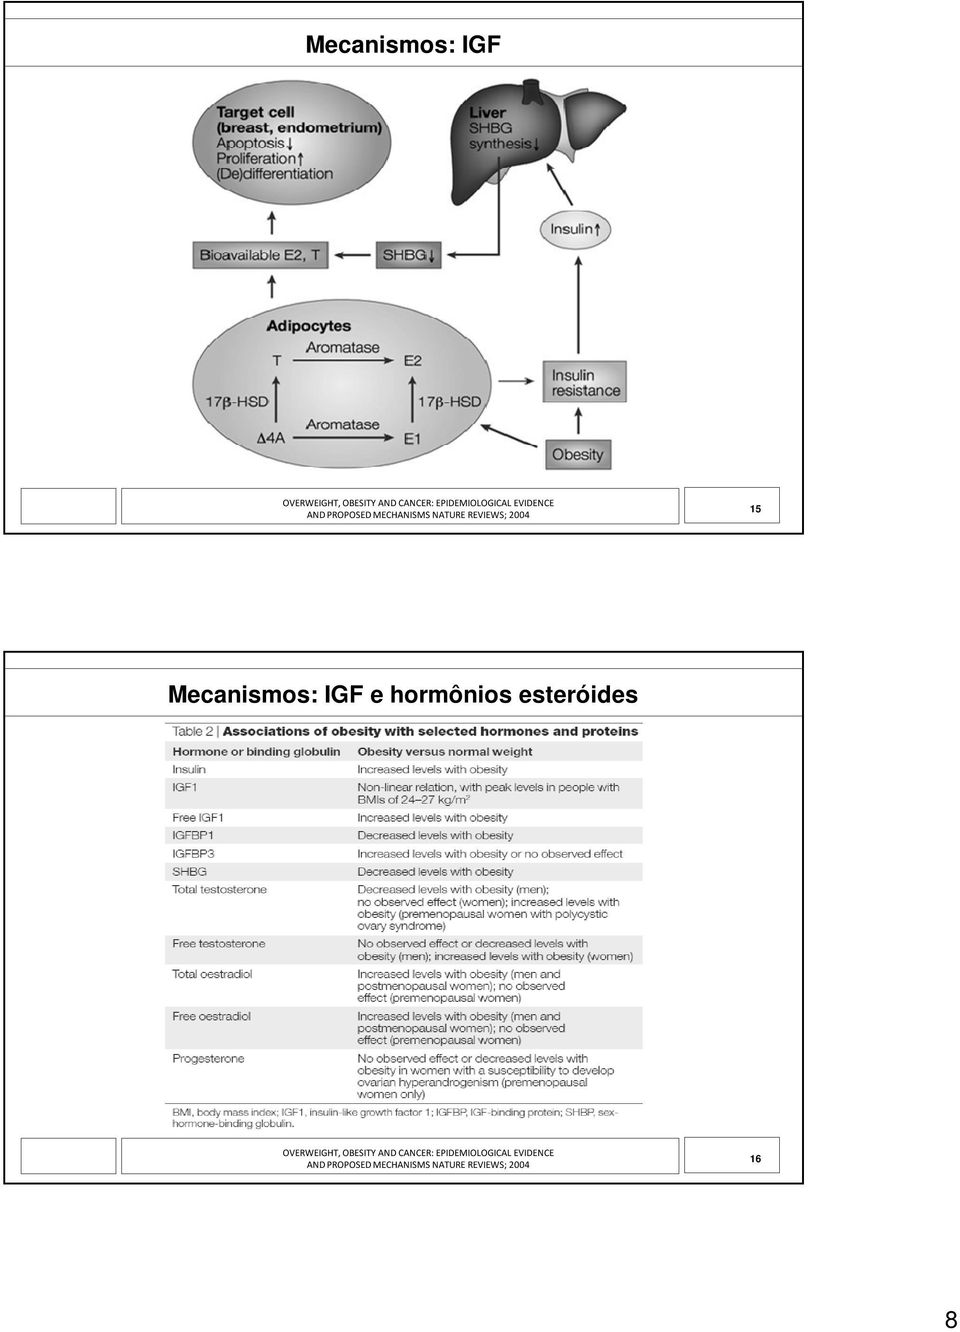 Mecanismos: IGF e hormônios esteróides OVERWEIGHT, OBESITY AND